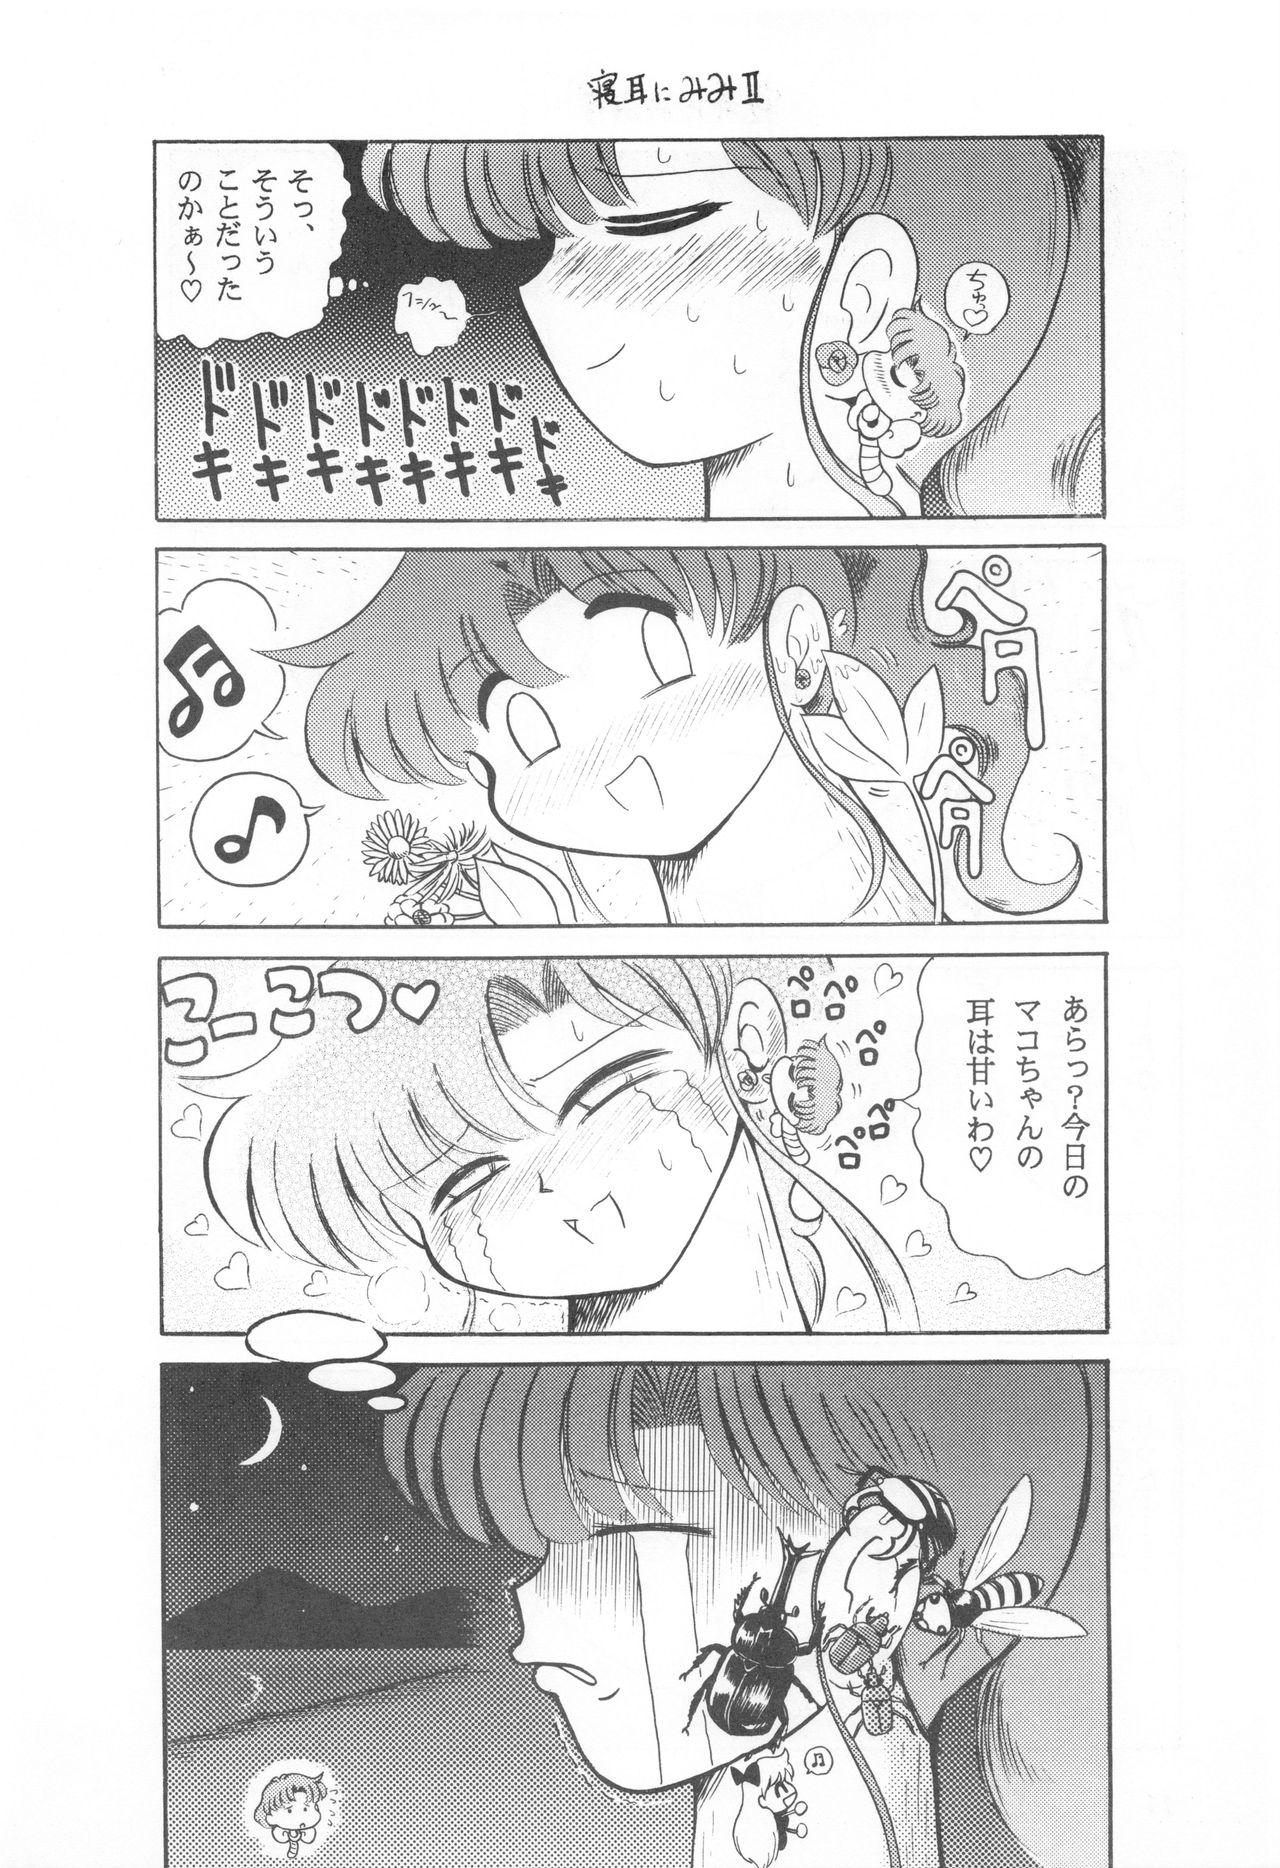 Pink Pussy Mimizu no Ami-chan Vol. 2 - Sailor moon Flash - Page 11